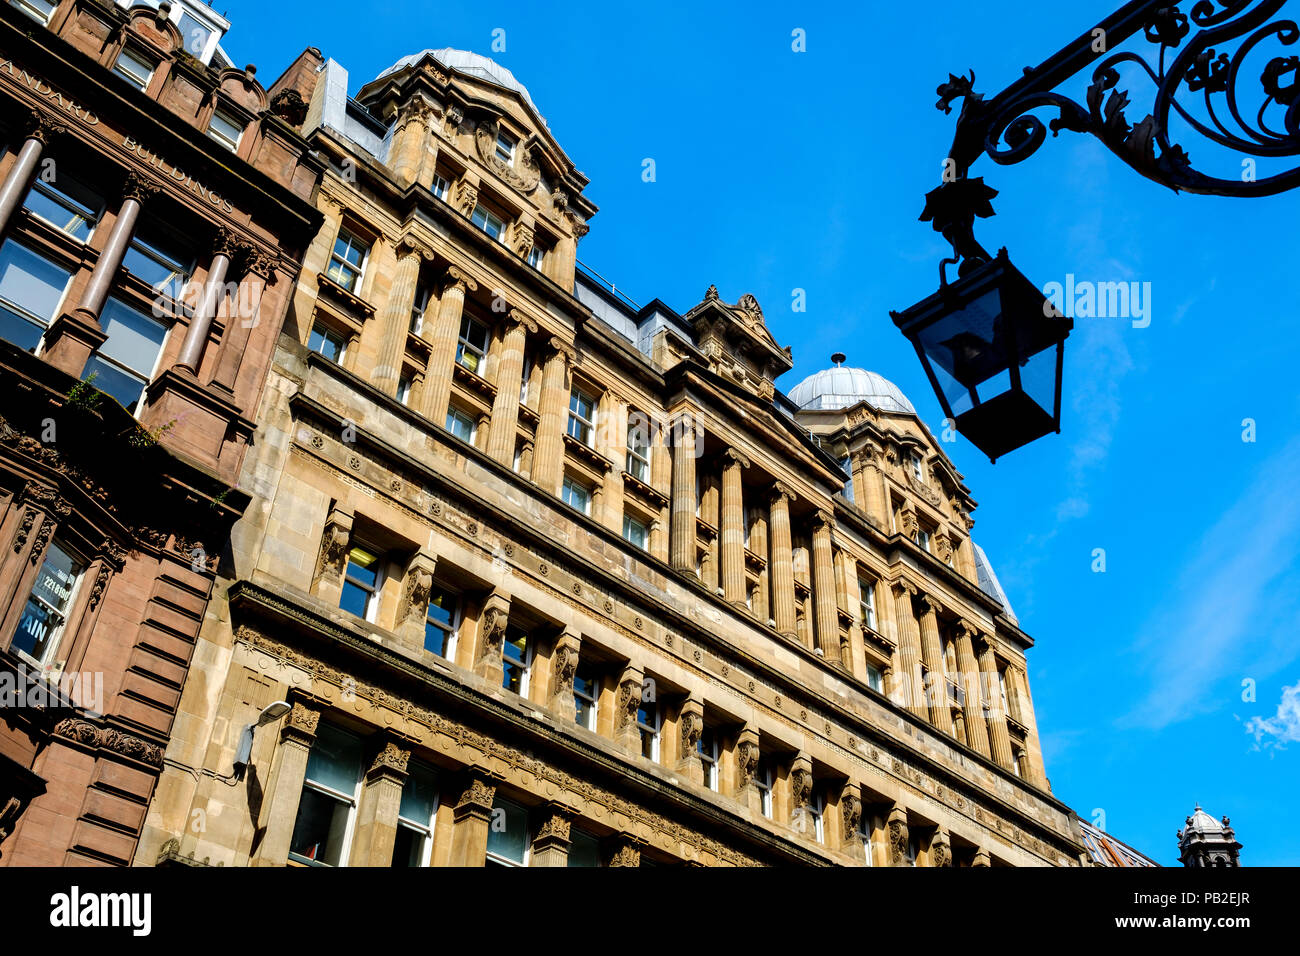 Architecture in Gordon Street, Glasgow Scotland Stock Photo